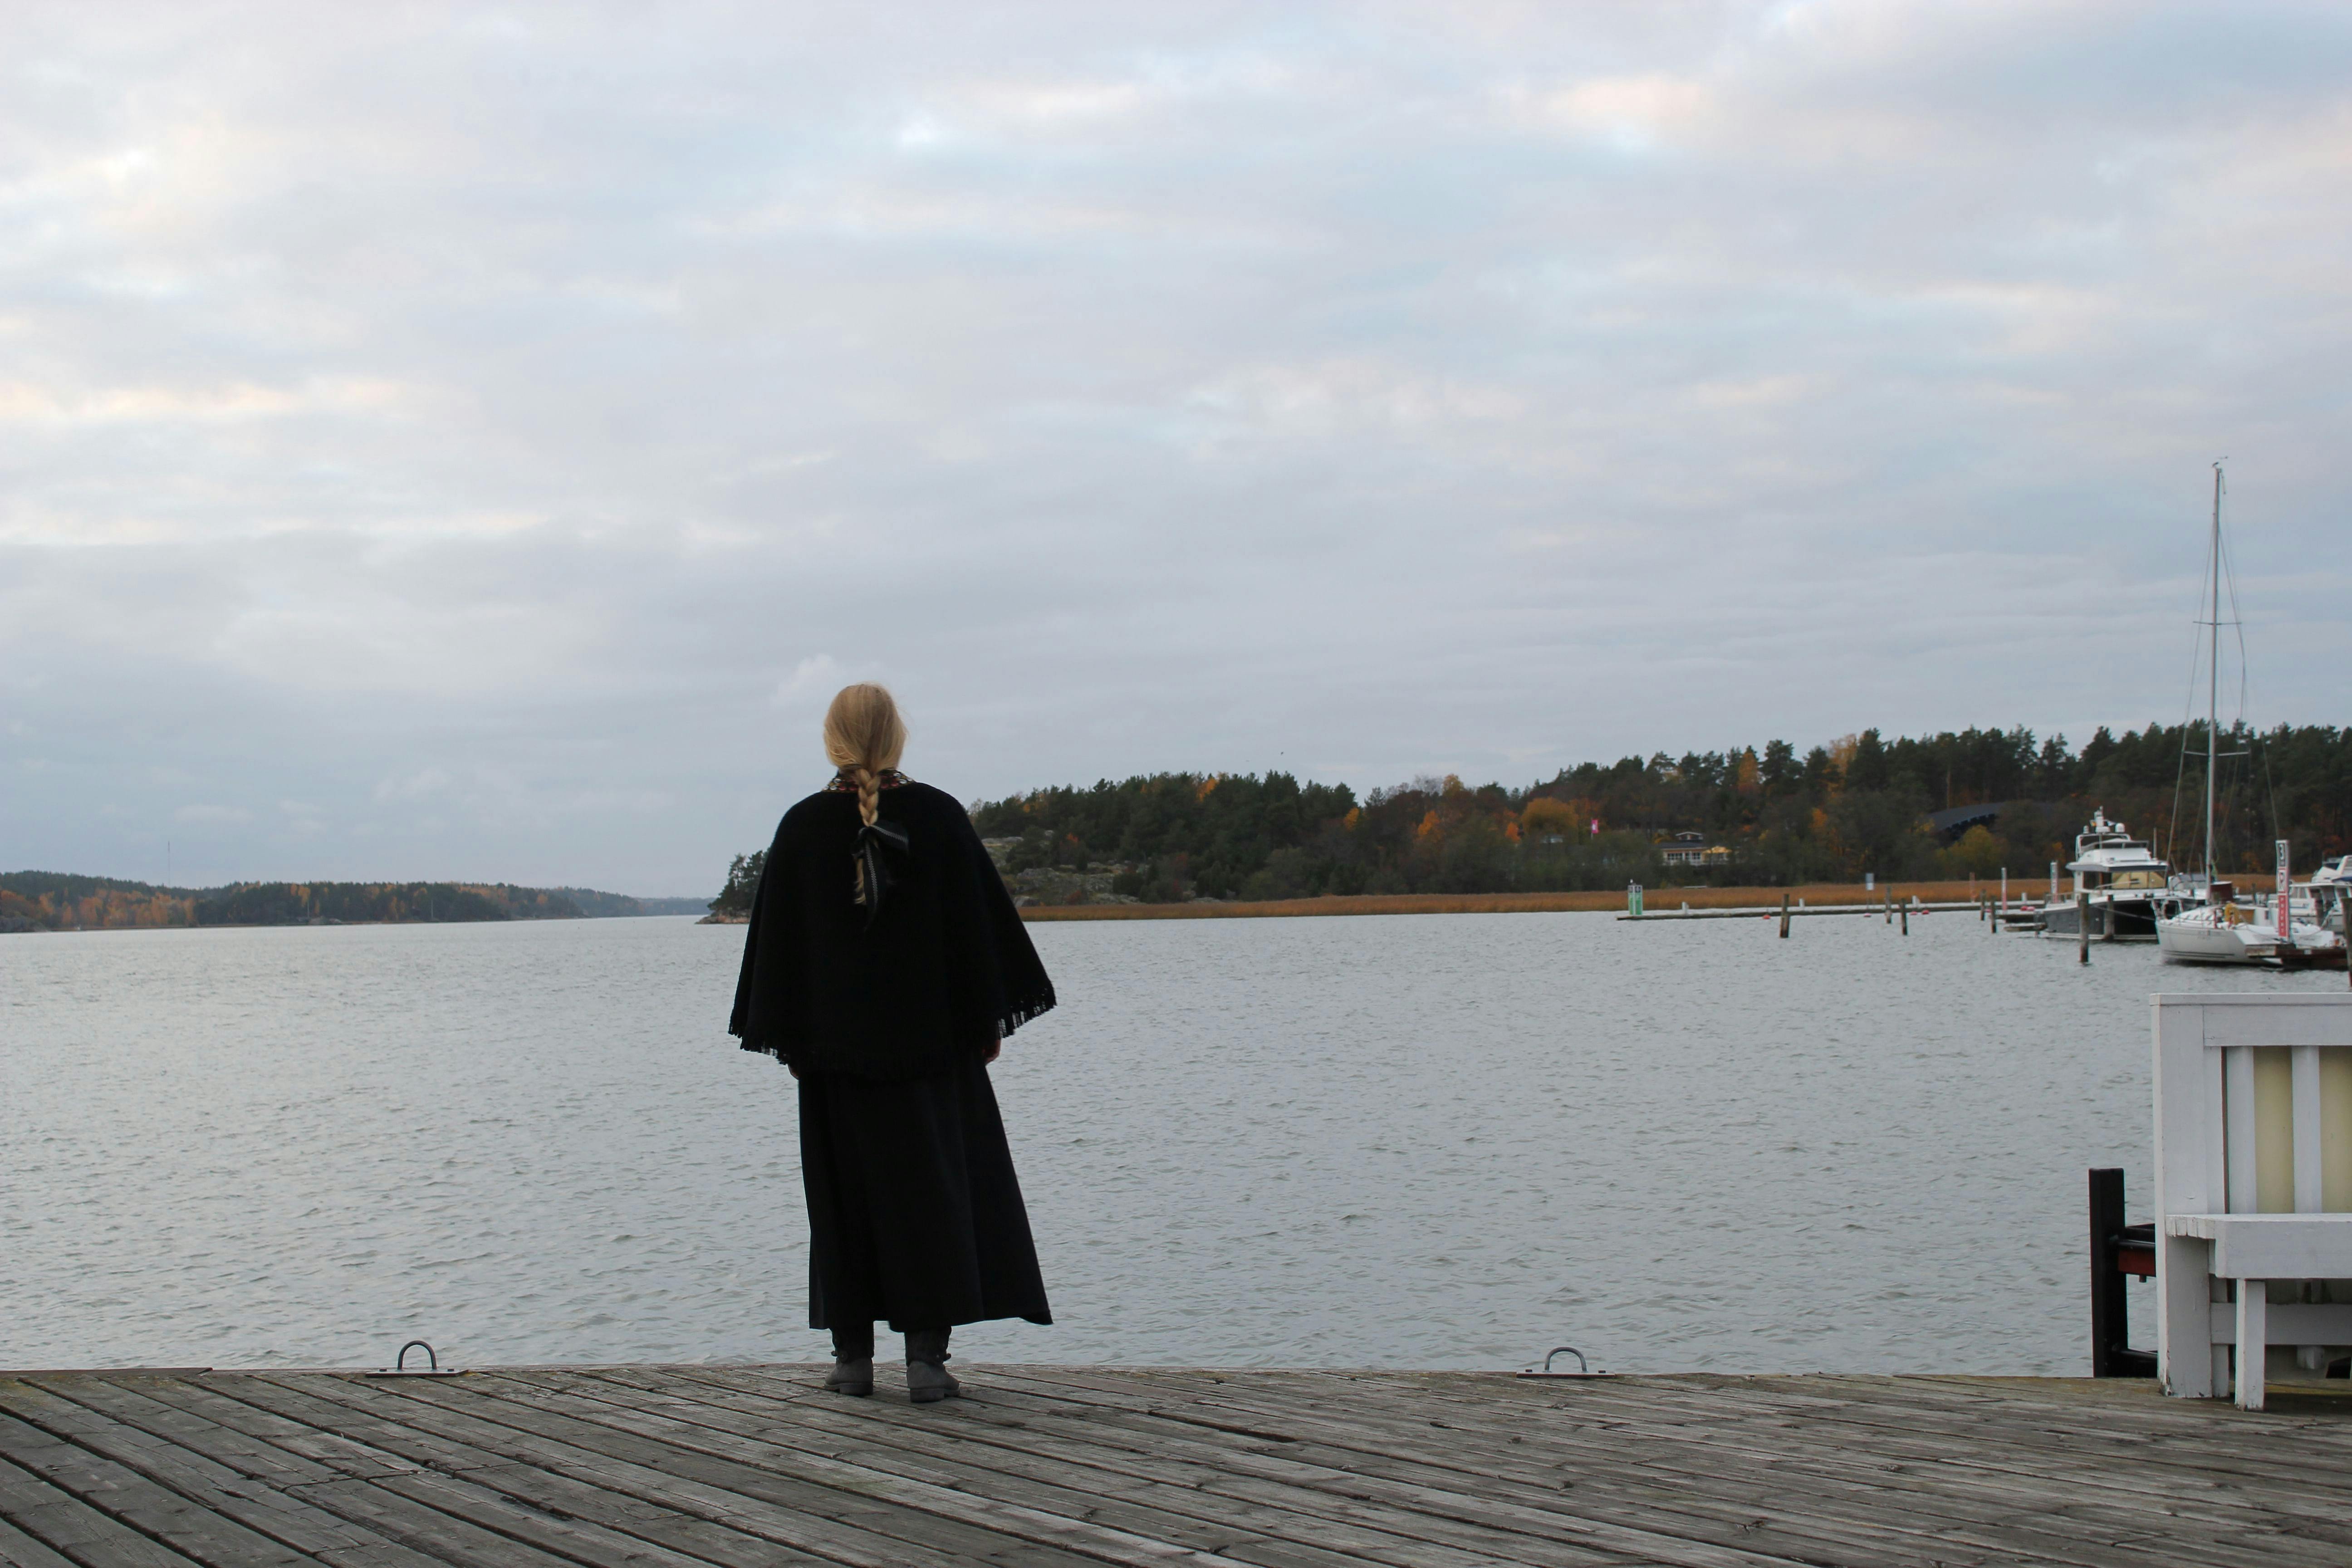 Nainen laiturilla pukeutuneena mustaan kaapuun, samalla katsoen merimaisemaa.